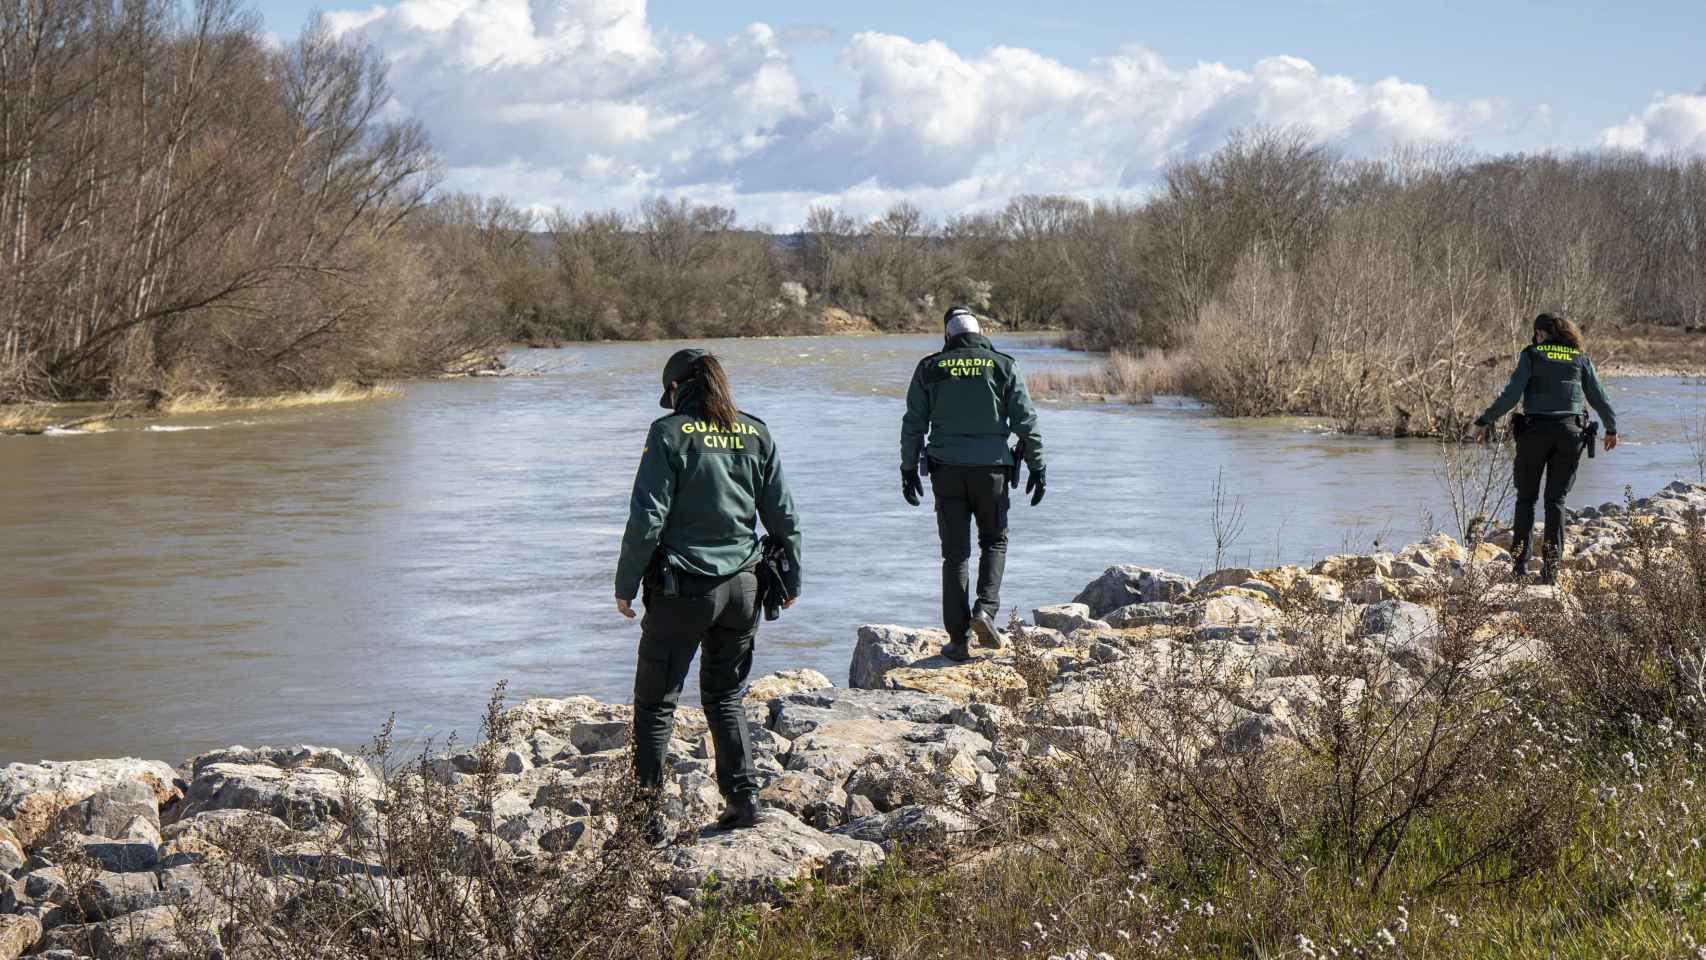 La Guardia Civil ha reanudado este martes la búsqueda del joven de 20 años desaparecido en la madrugada del pasado sábado en la capital riojana, en la zona de las riberas del Ebro, fuera del término municipal, en dirección Zaragoza y en ambas orillas del río.